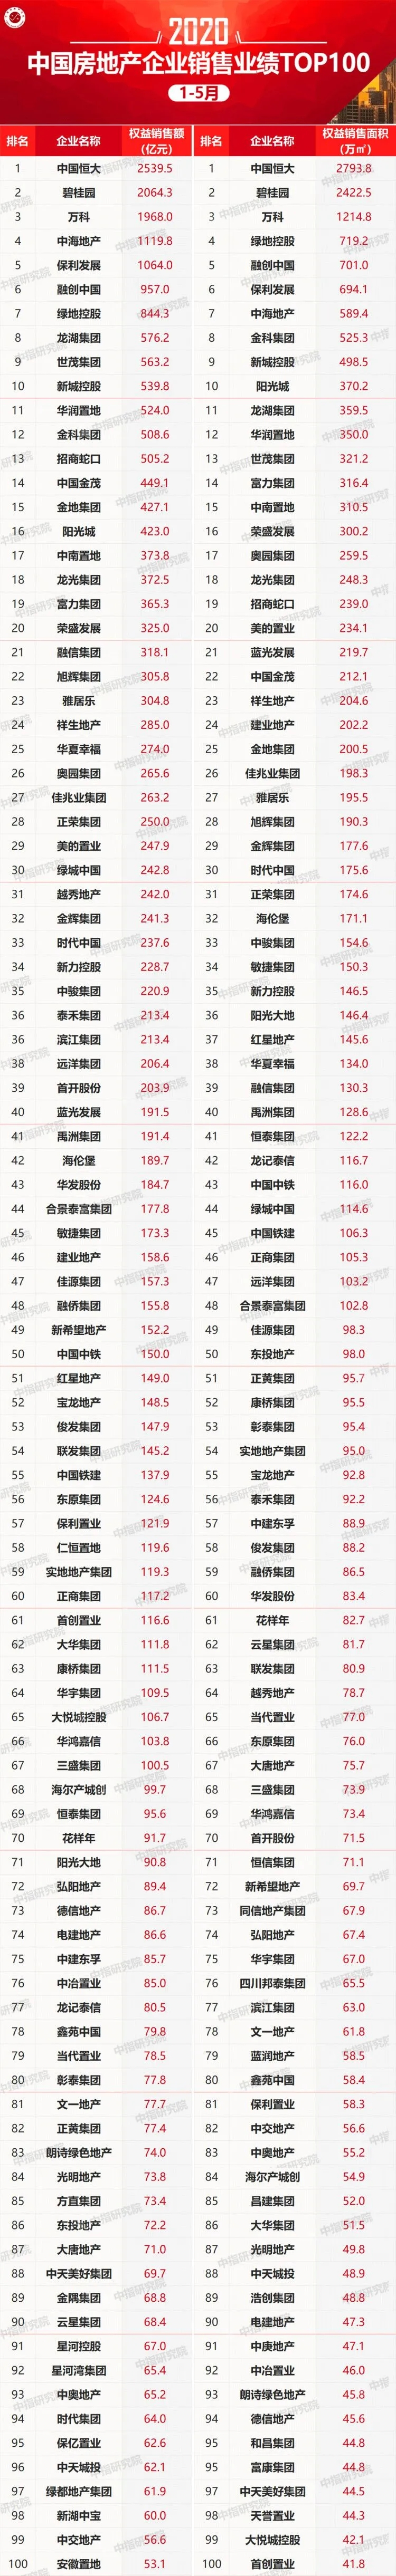 2020年1-5月中国房地产企业销售业绩100